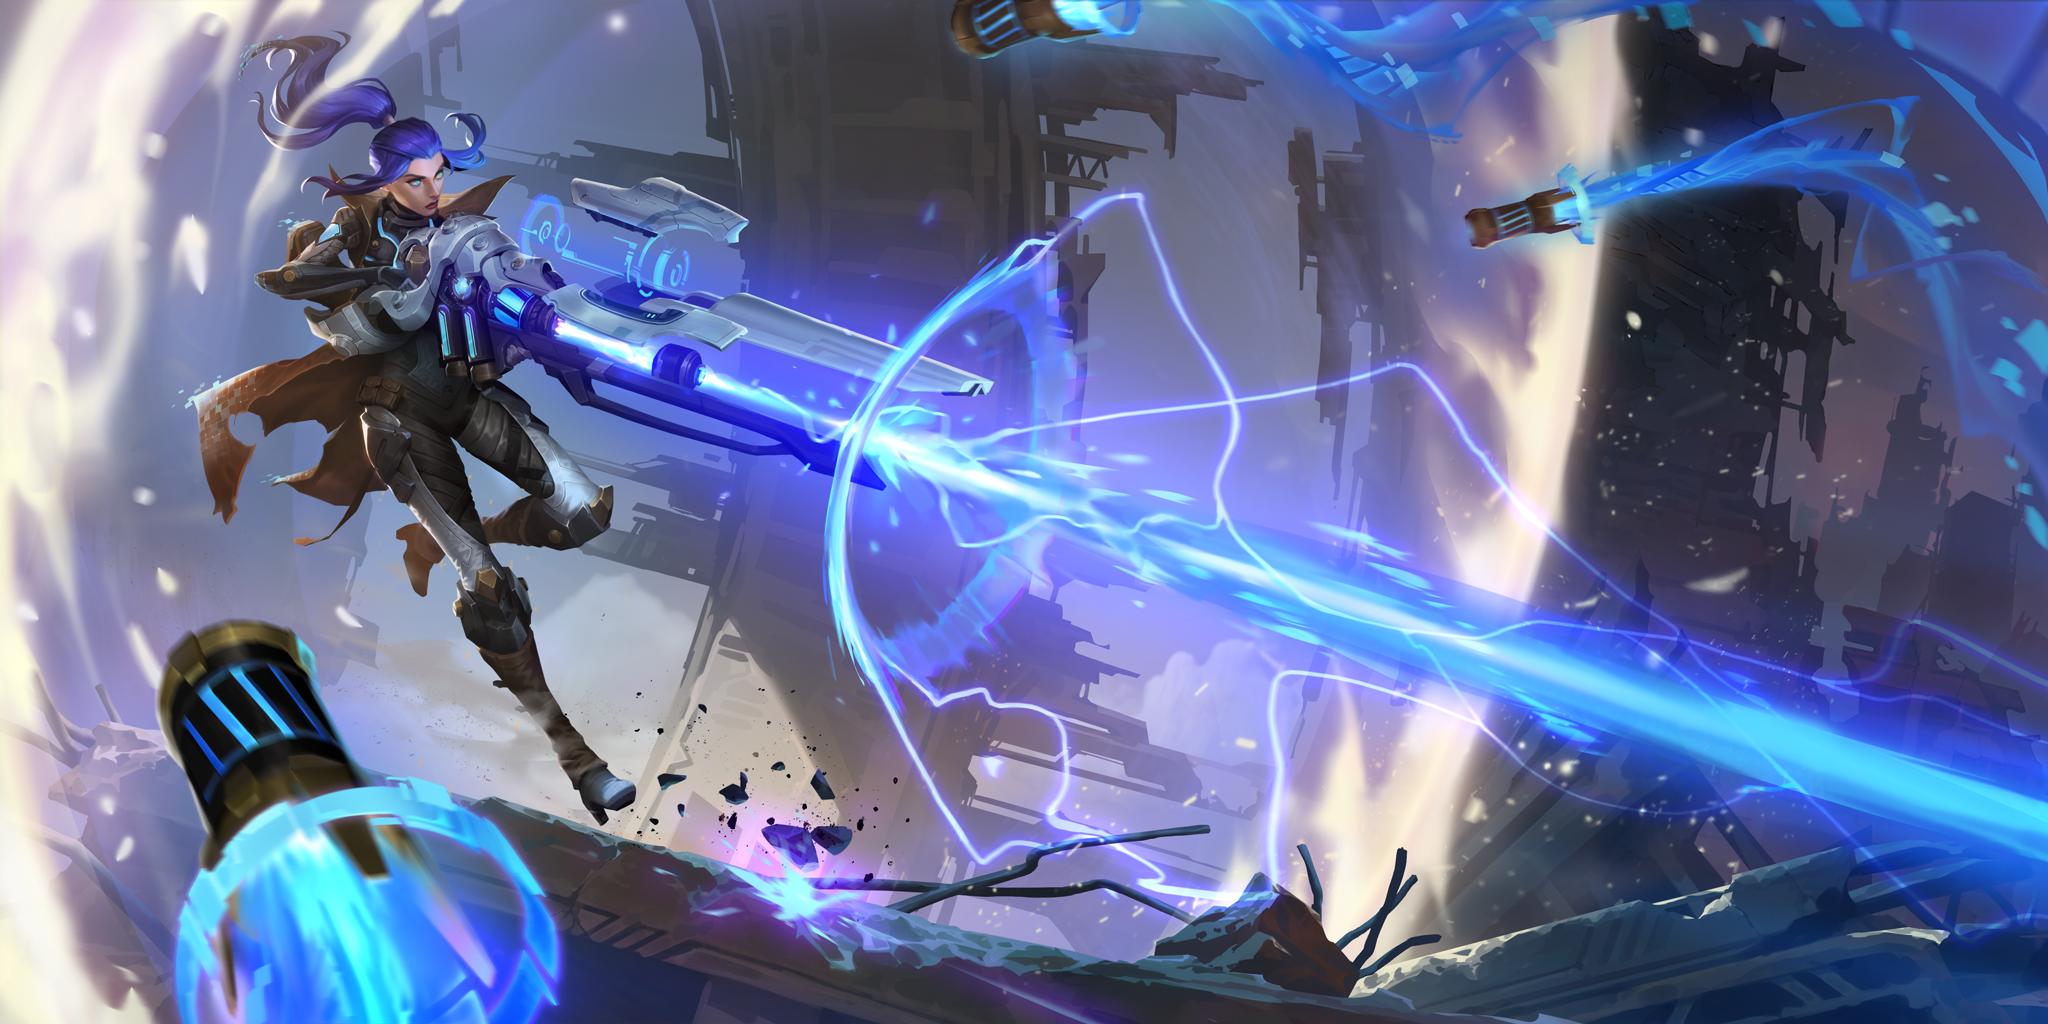 Soporte al jugador de Legends of Runeterra - Caitlyn Pulso de Fuego disparando una rayo de energía con un fusil enorme mientras misiles vuelan hacia ella.